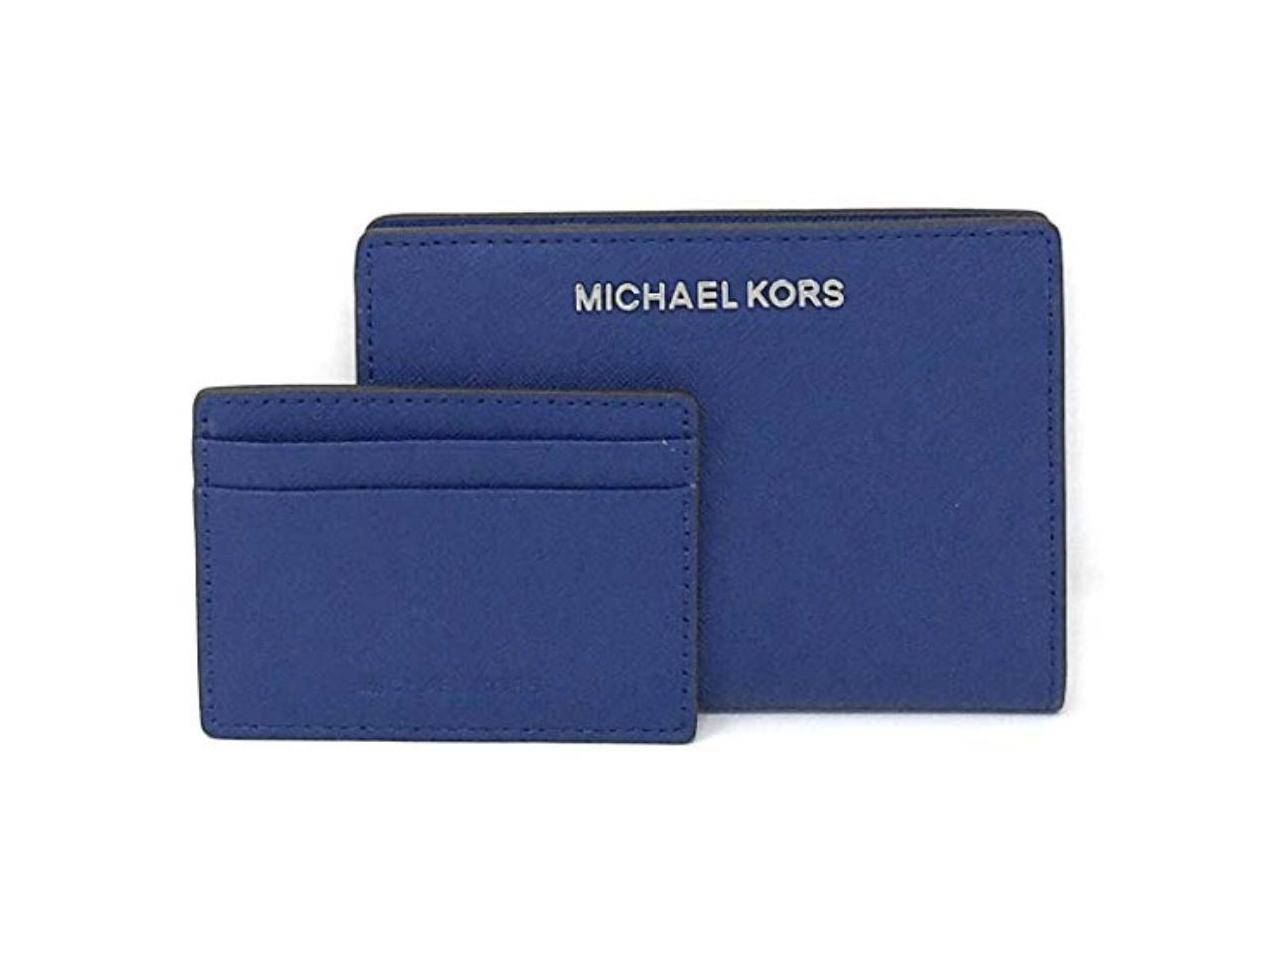 card holder wallet womens michael kors